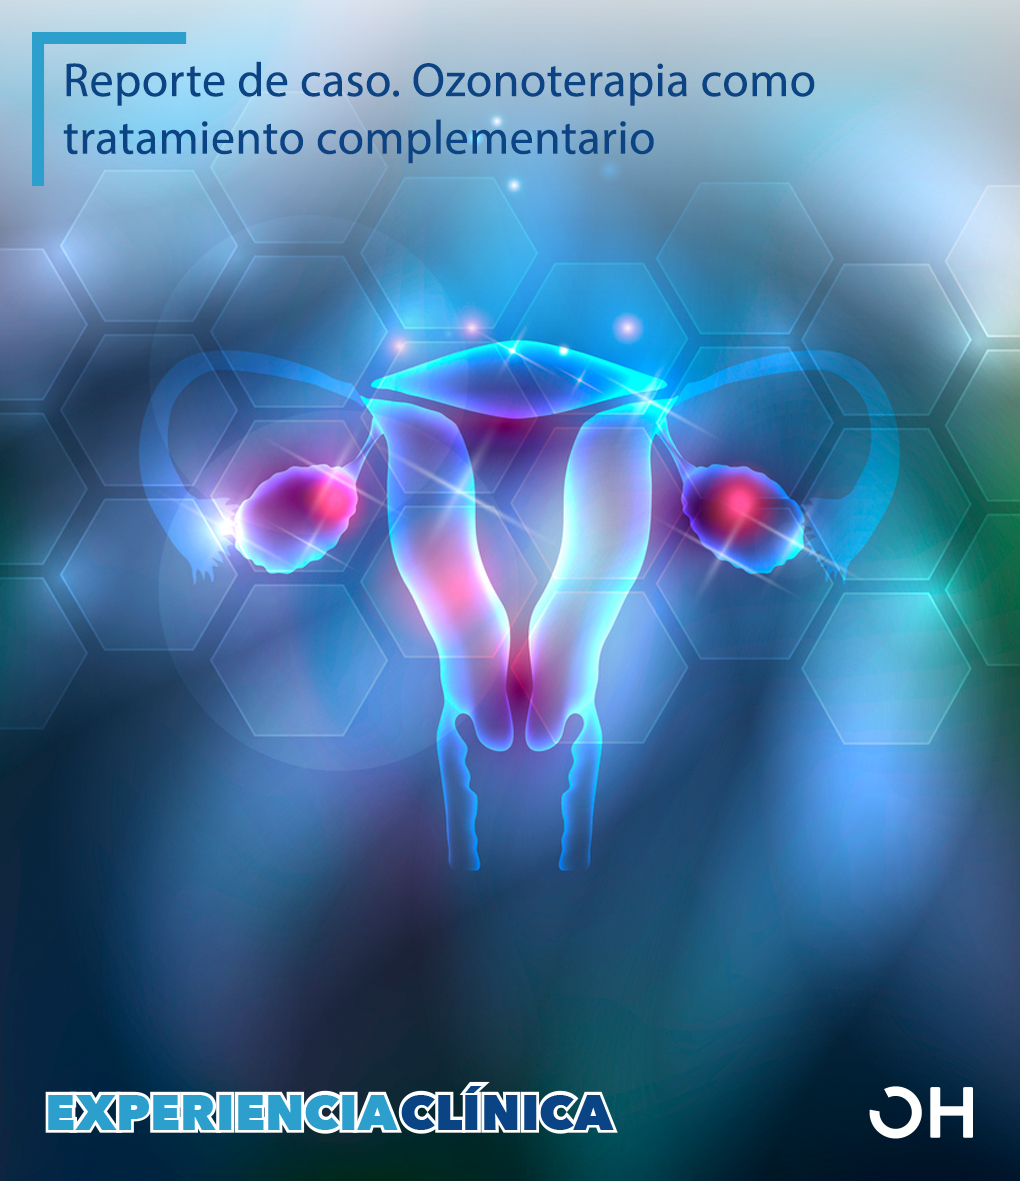 Ozono como terapia complementaria en el tratamiento de quiste de ovario